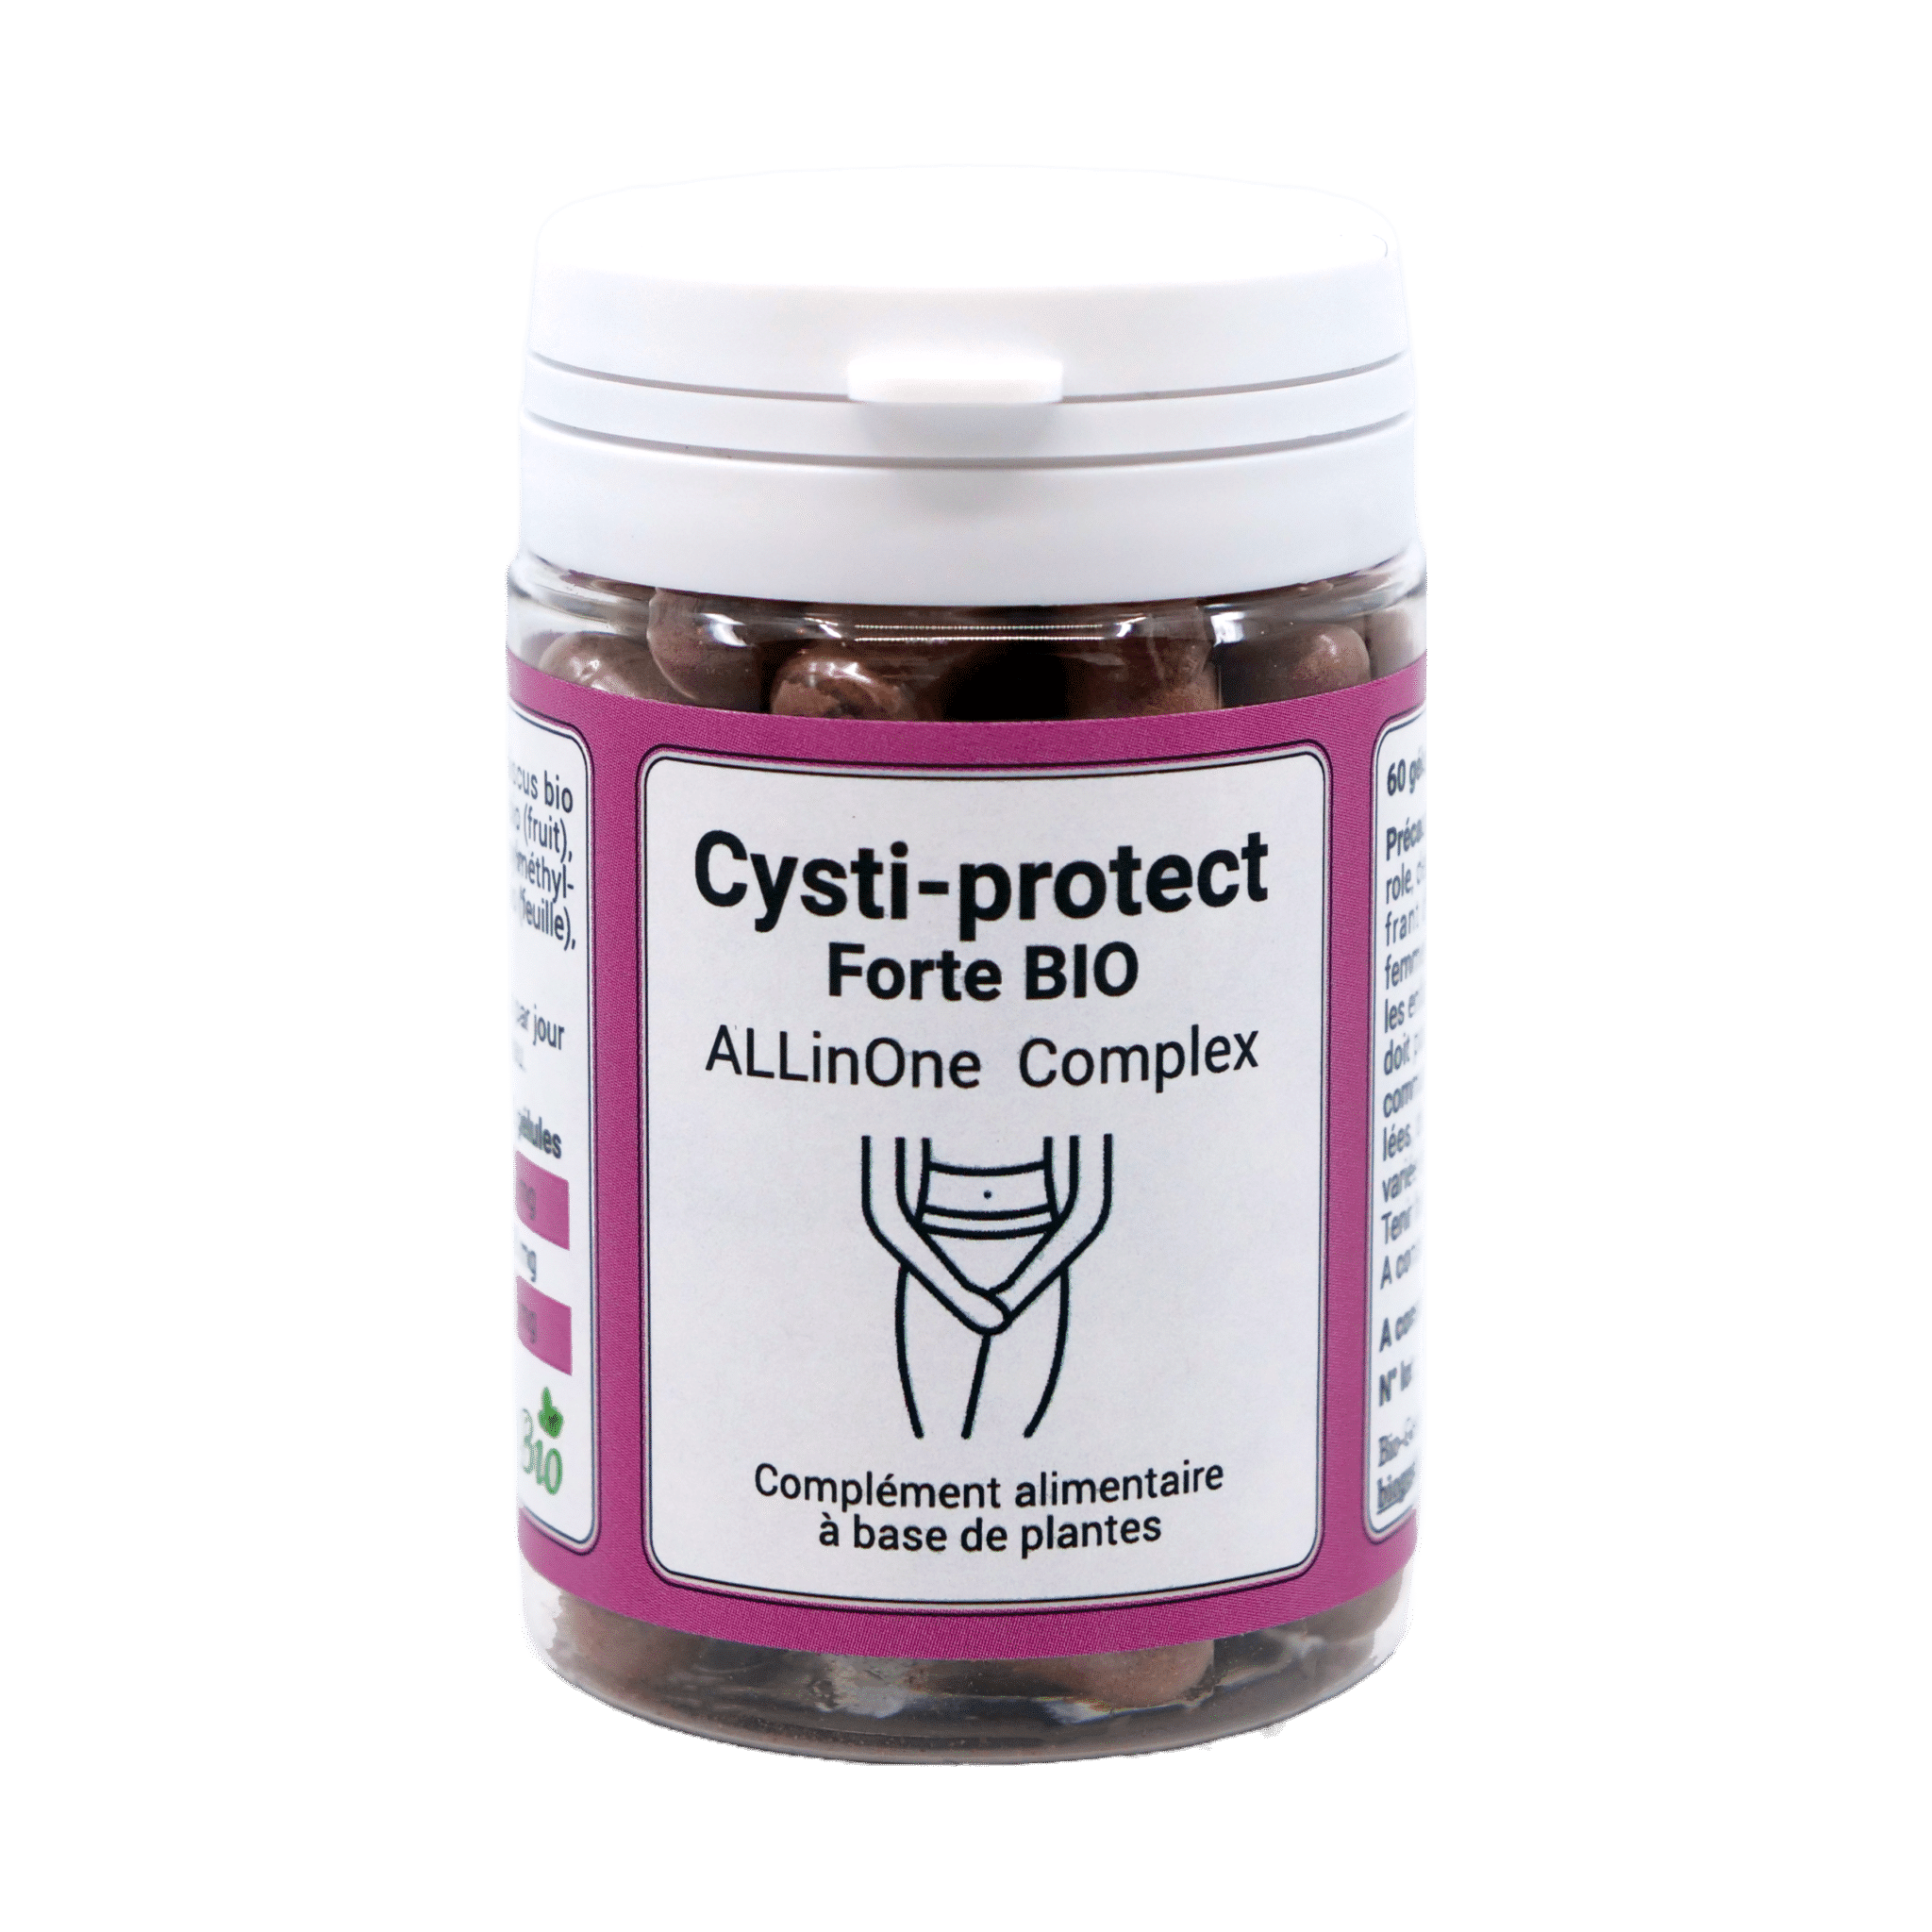 Composé de canneberge, d'hibiscus et de busserole bio, Cysti-protect Forte BIO (AllinOne Complex) est un complément alimentaire novateur qui peut aider à prévenir et traiter naturellement la cystite.